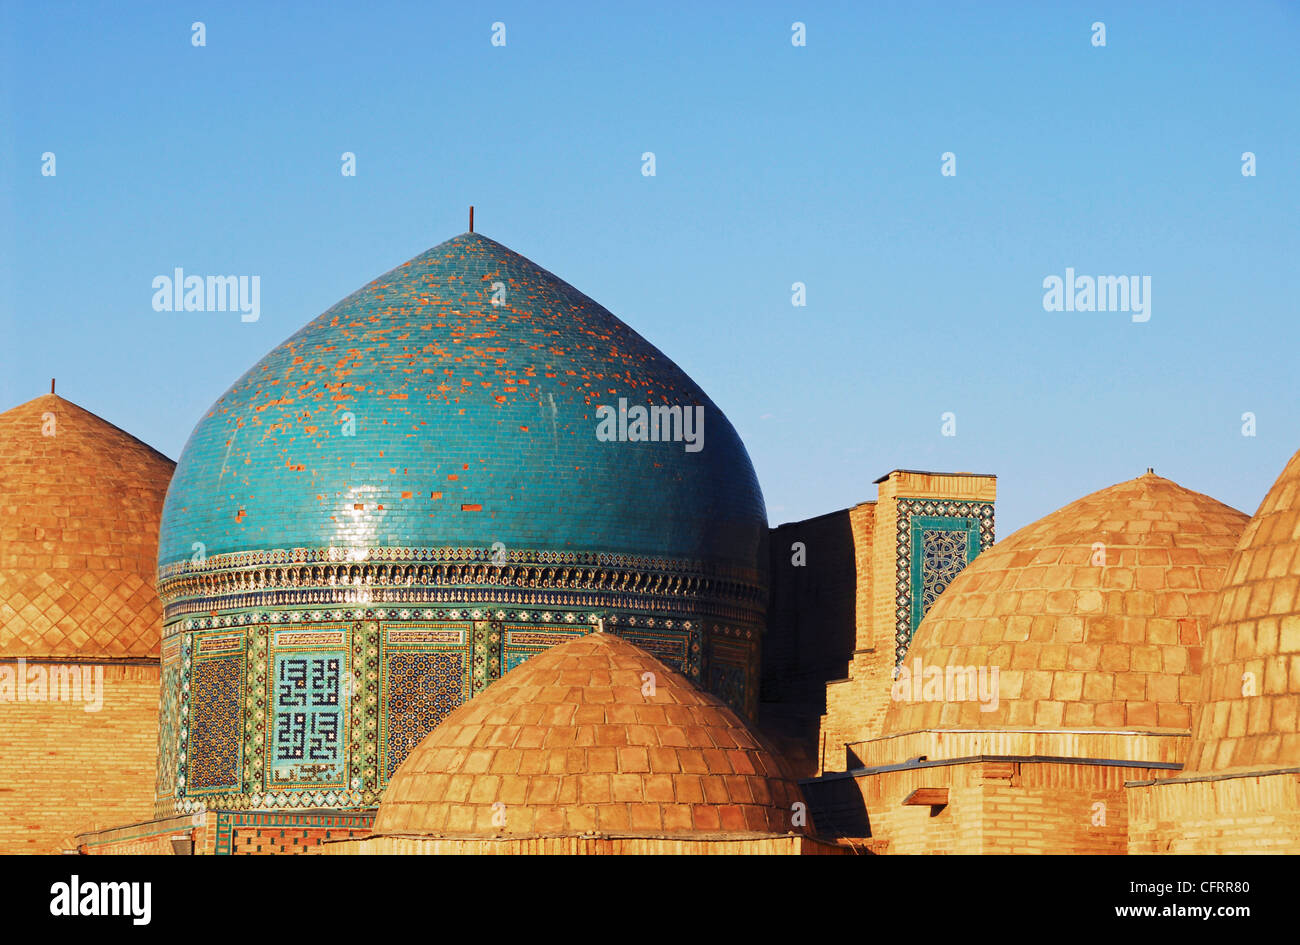 L'Ouzbékistan, Samarkand, Shah-i-Zinda, ensemble de bâtiments de briques cuites au four avec des coupoles en brique, partie du Shah-i-Zinda mausolée. Banque D'Images